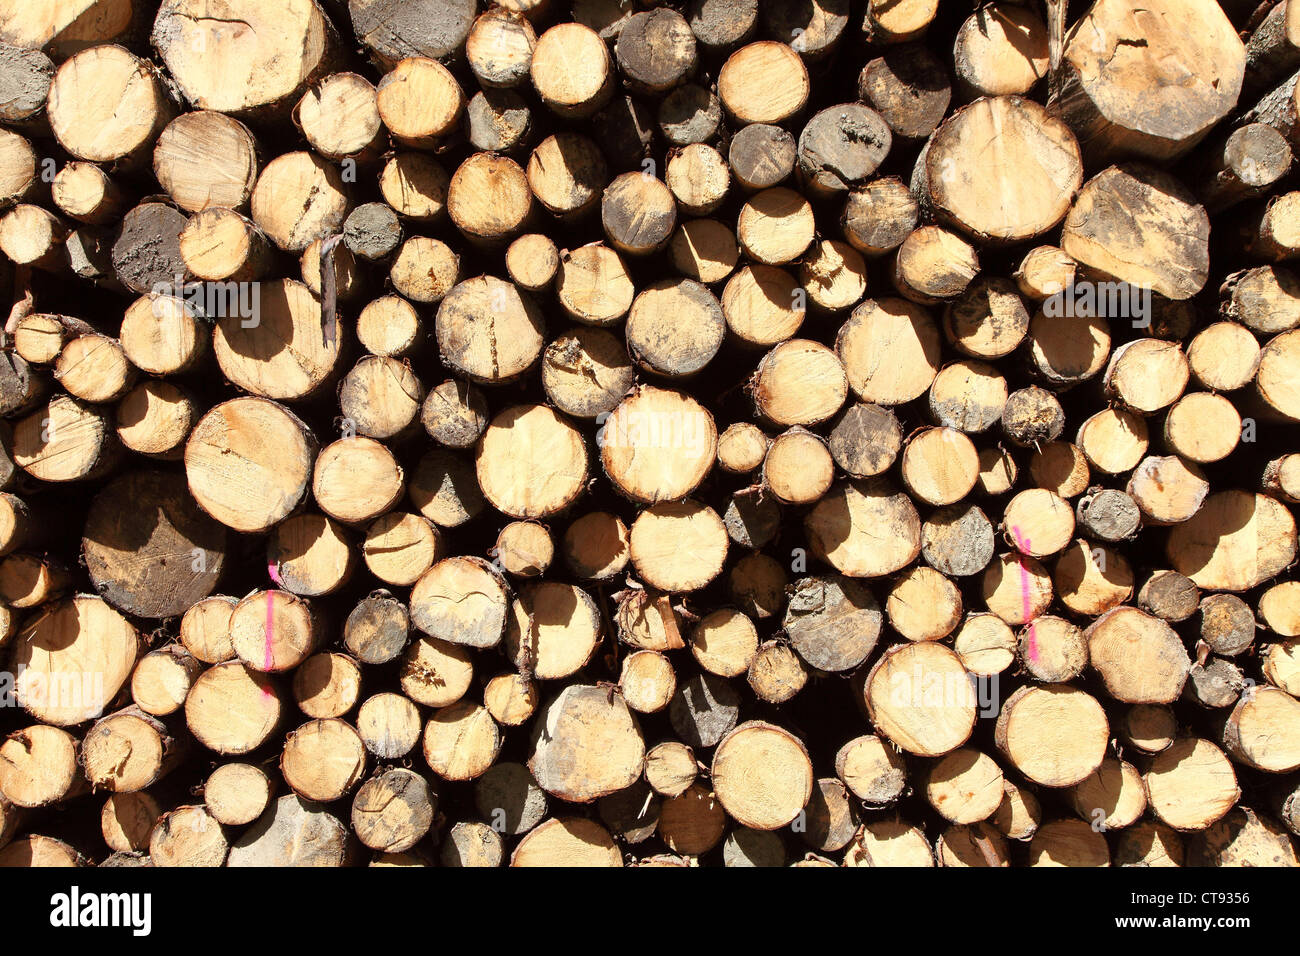 Un tas de bois dans une forêt. Les troncs d'arbres empilés, prêt à être transporté à une scierie. Banque D'Images